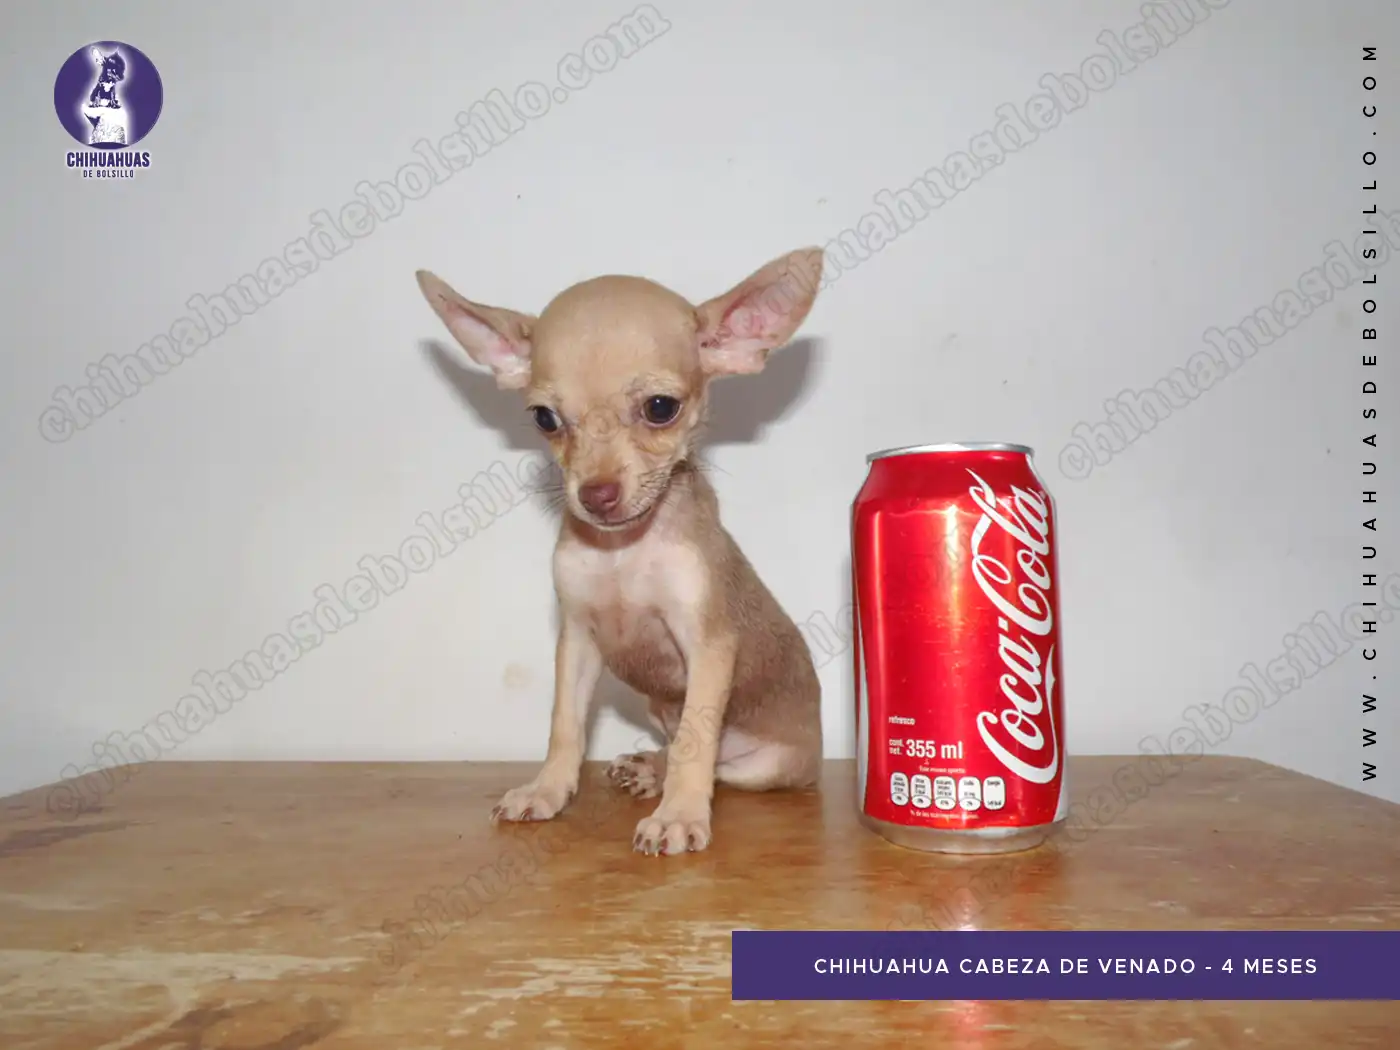 Chihuahua Cabeza de Venado 4 Meses